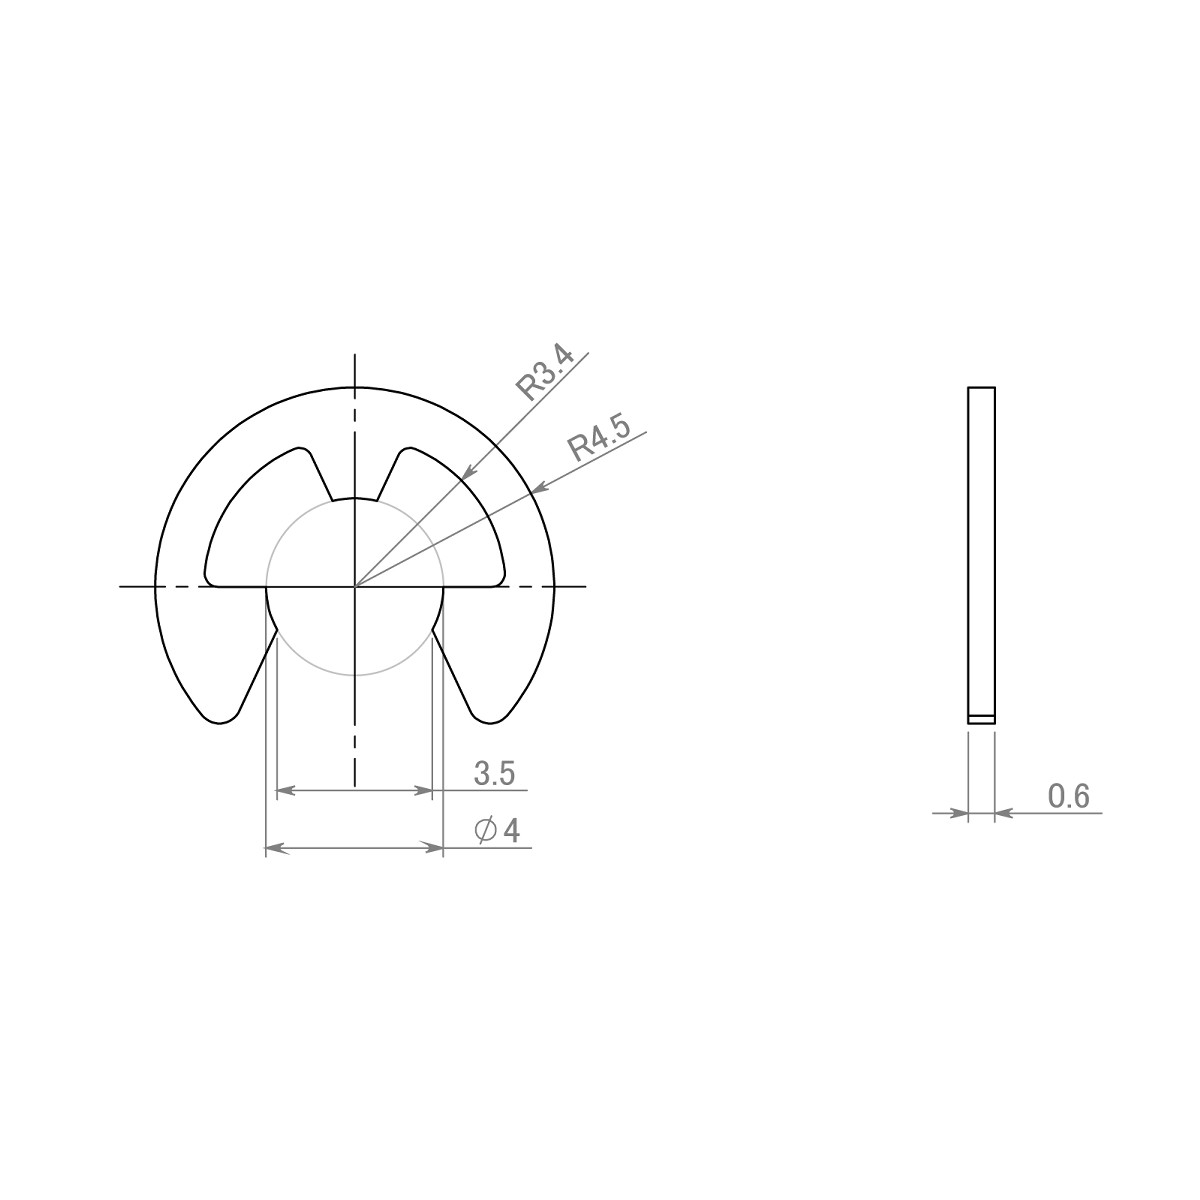 セイミツ工業製ジョイスティックレバー用 E形留め輪(Eリング) 呼び径Φ4 (2個) 【SR-E-P4】